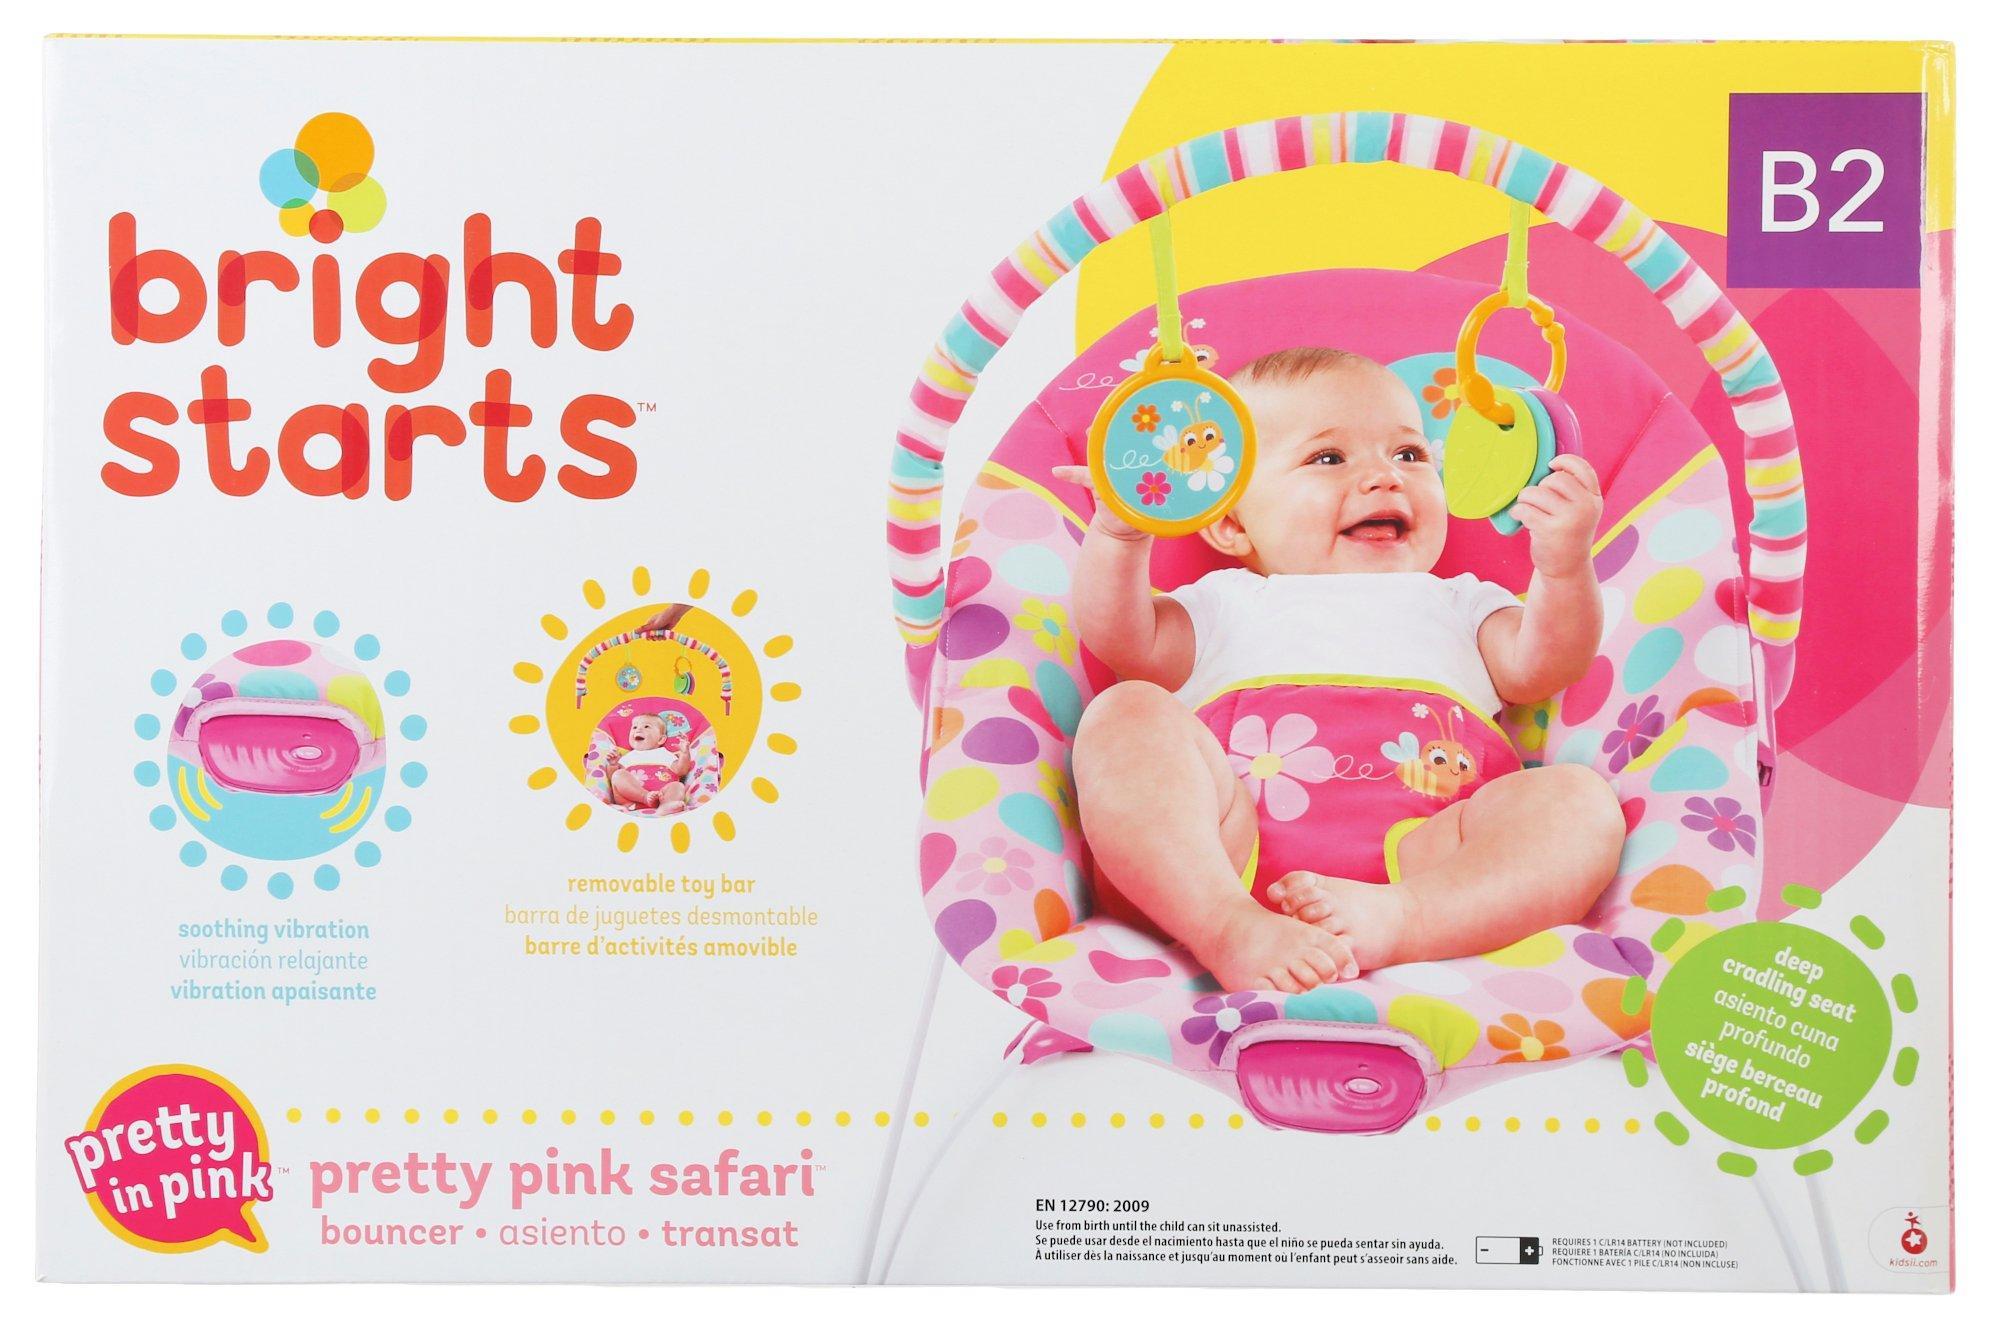 bright starts bouncer pretty pink safari